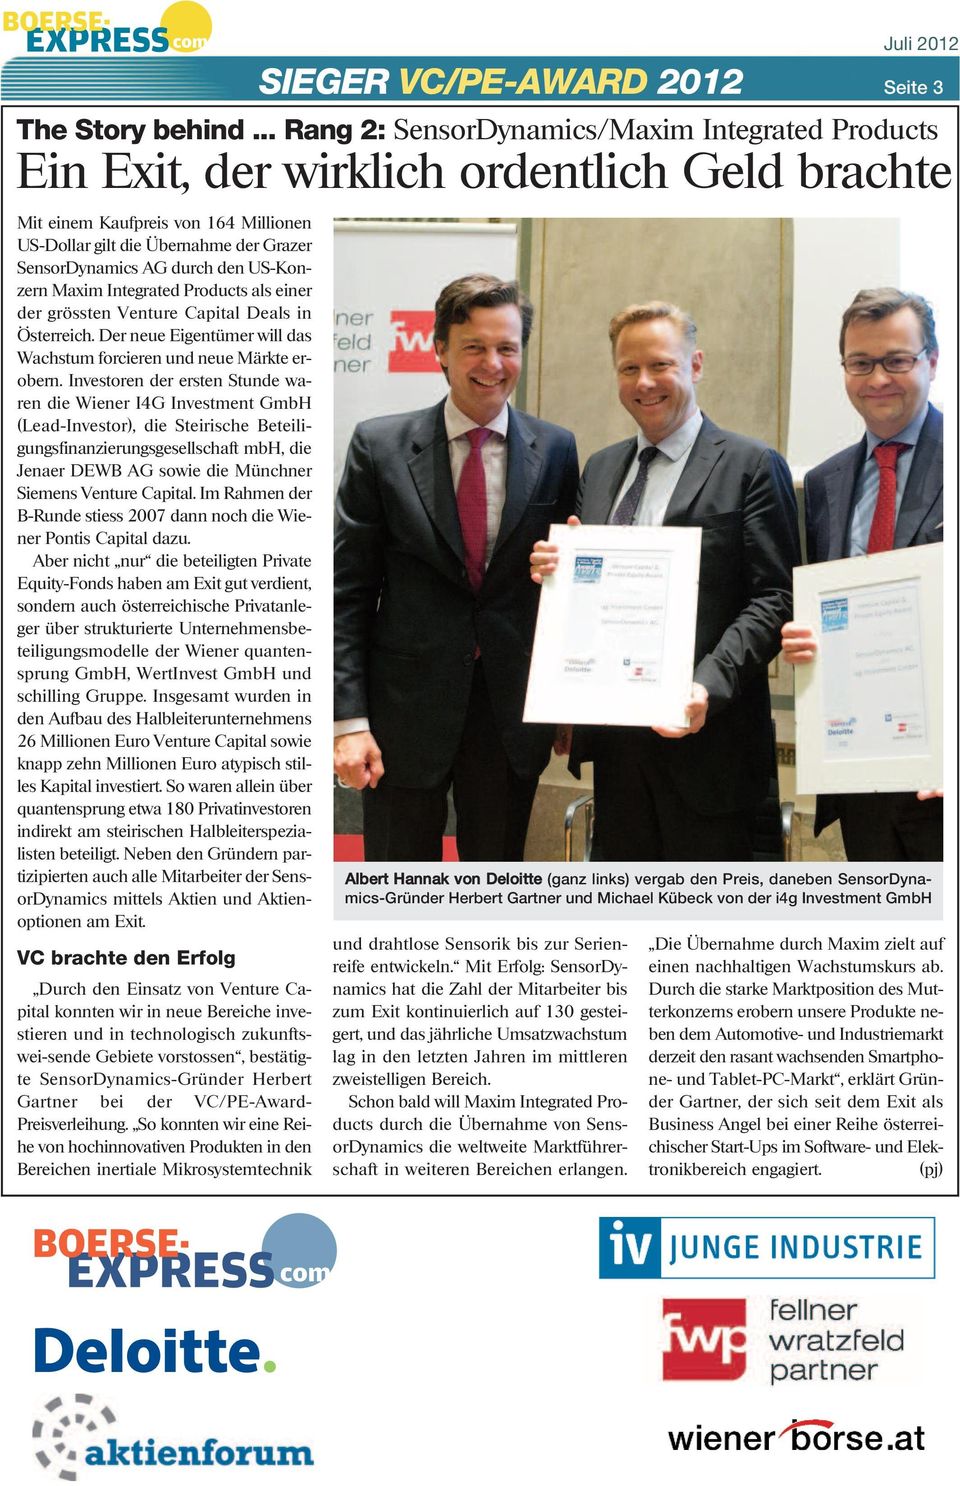 Investoren der ersten Stunde waren die Wiener I4G Investment GmbH (Lead-Investor), die Steirische Beteiligungsfinanzierungsgesellschaft mbh, die Jenaer DEWB AG sowie die Münchner Siemens Venture